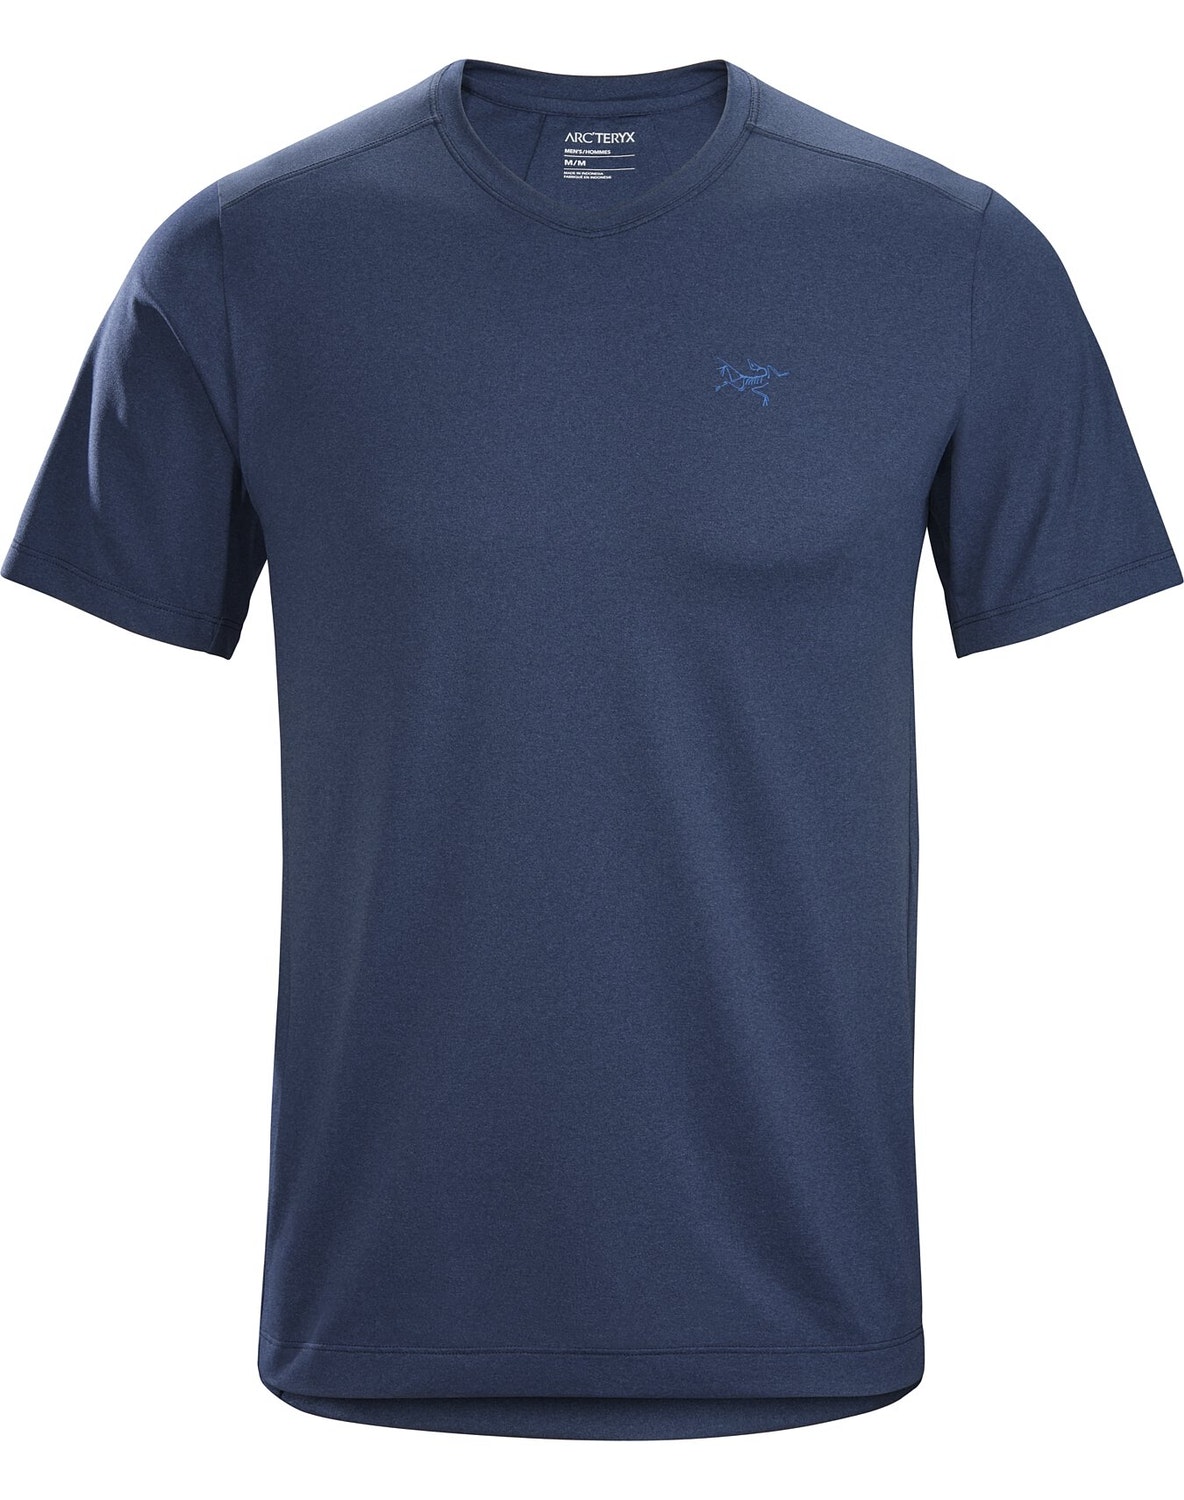 T-shirt Arc'teryx Remige Uomo Blu - IT-37659714